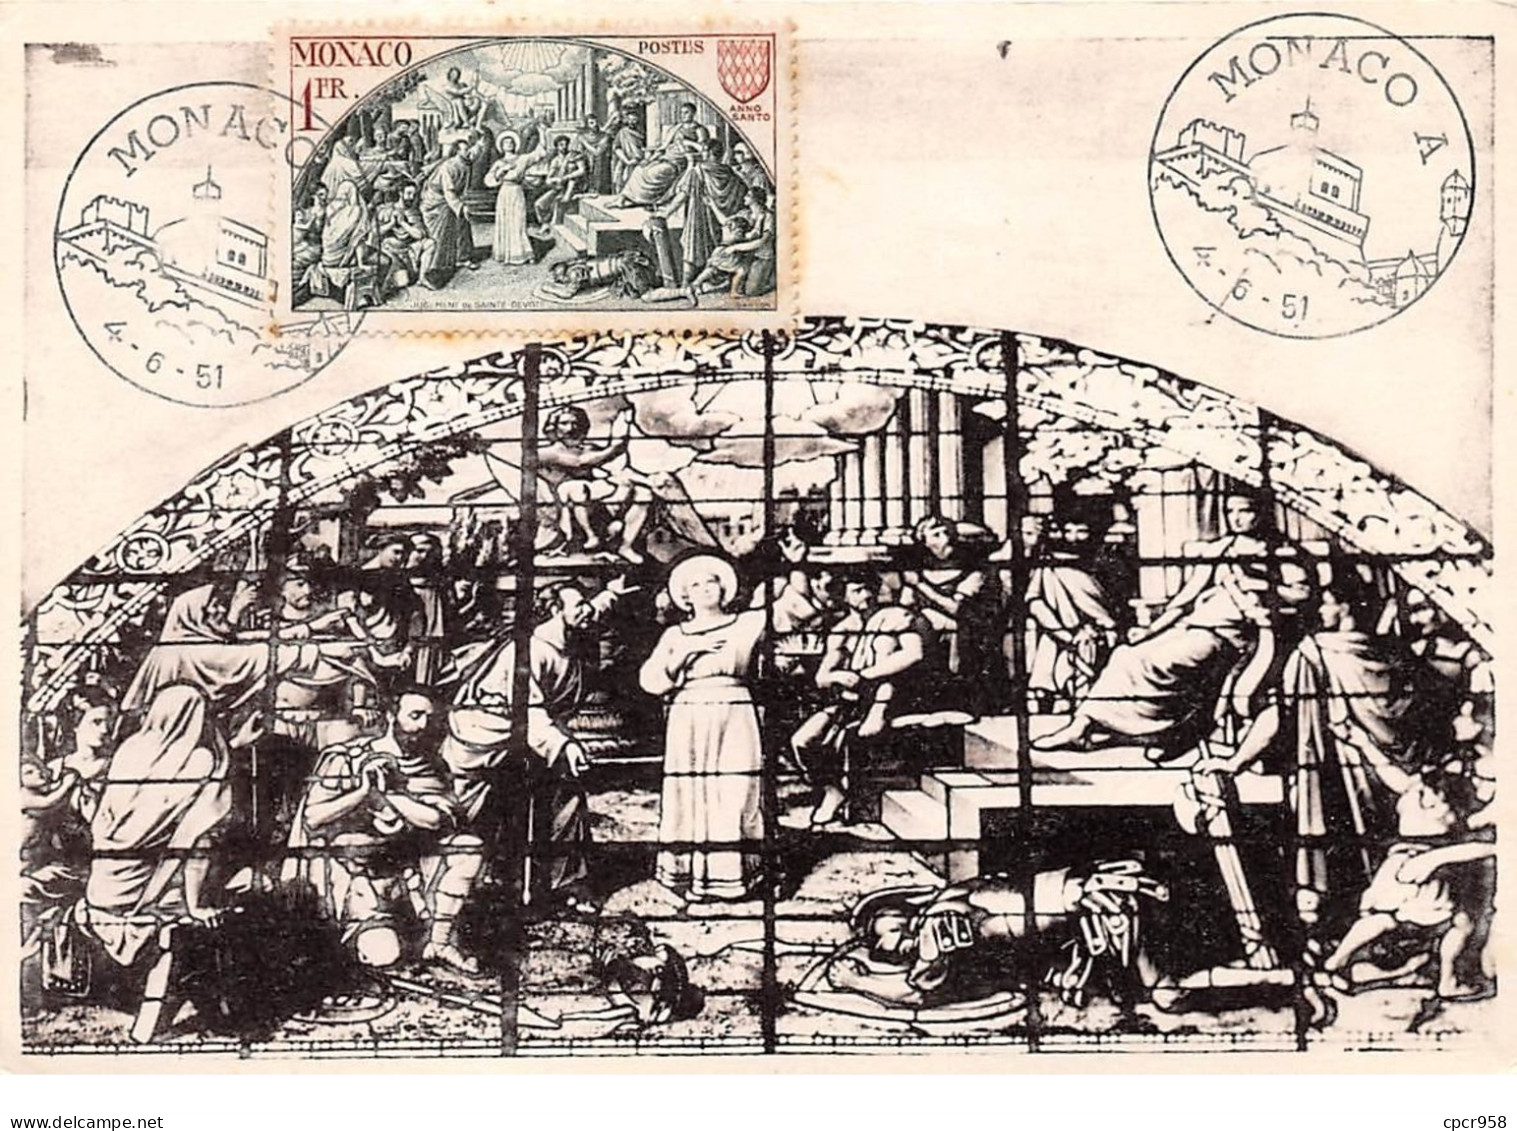 1951 . Carte Maximum . N°105606 .monaco.jugement De Sainte Devote .cachet Monaco . - Cartes-Maximum (CM)